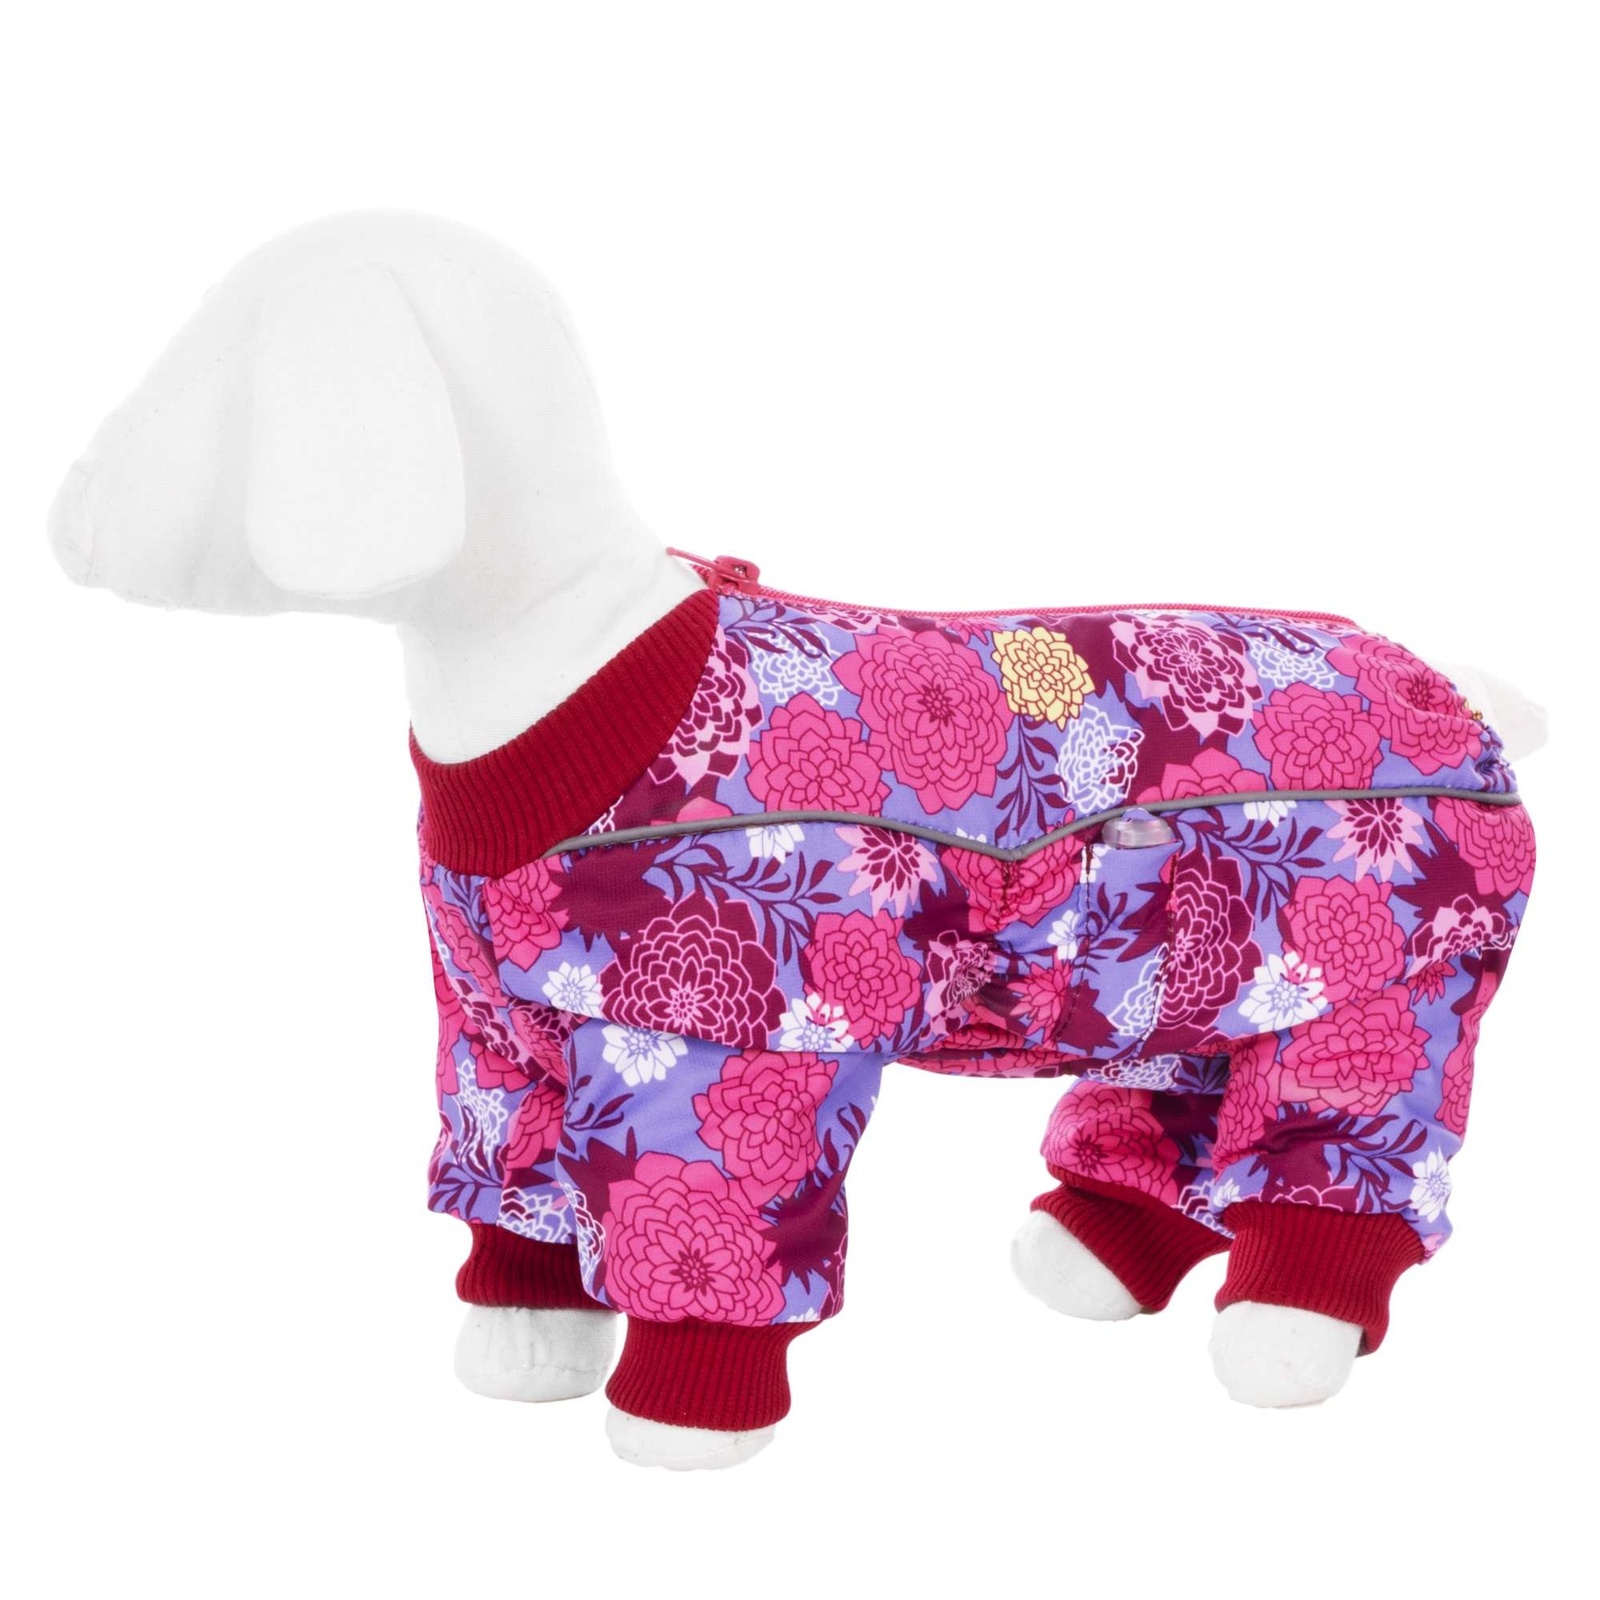 Yami-Yami одежда Yami-Yami одежда комбинезон для собак малых пород, на флисе с рисунком цветы (100 г) yami yami одежда yami yami одежда комбинезон для той терьера на флисе с рисунком краски s